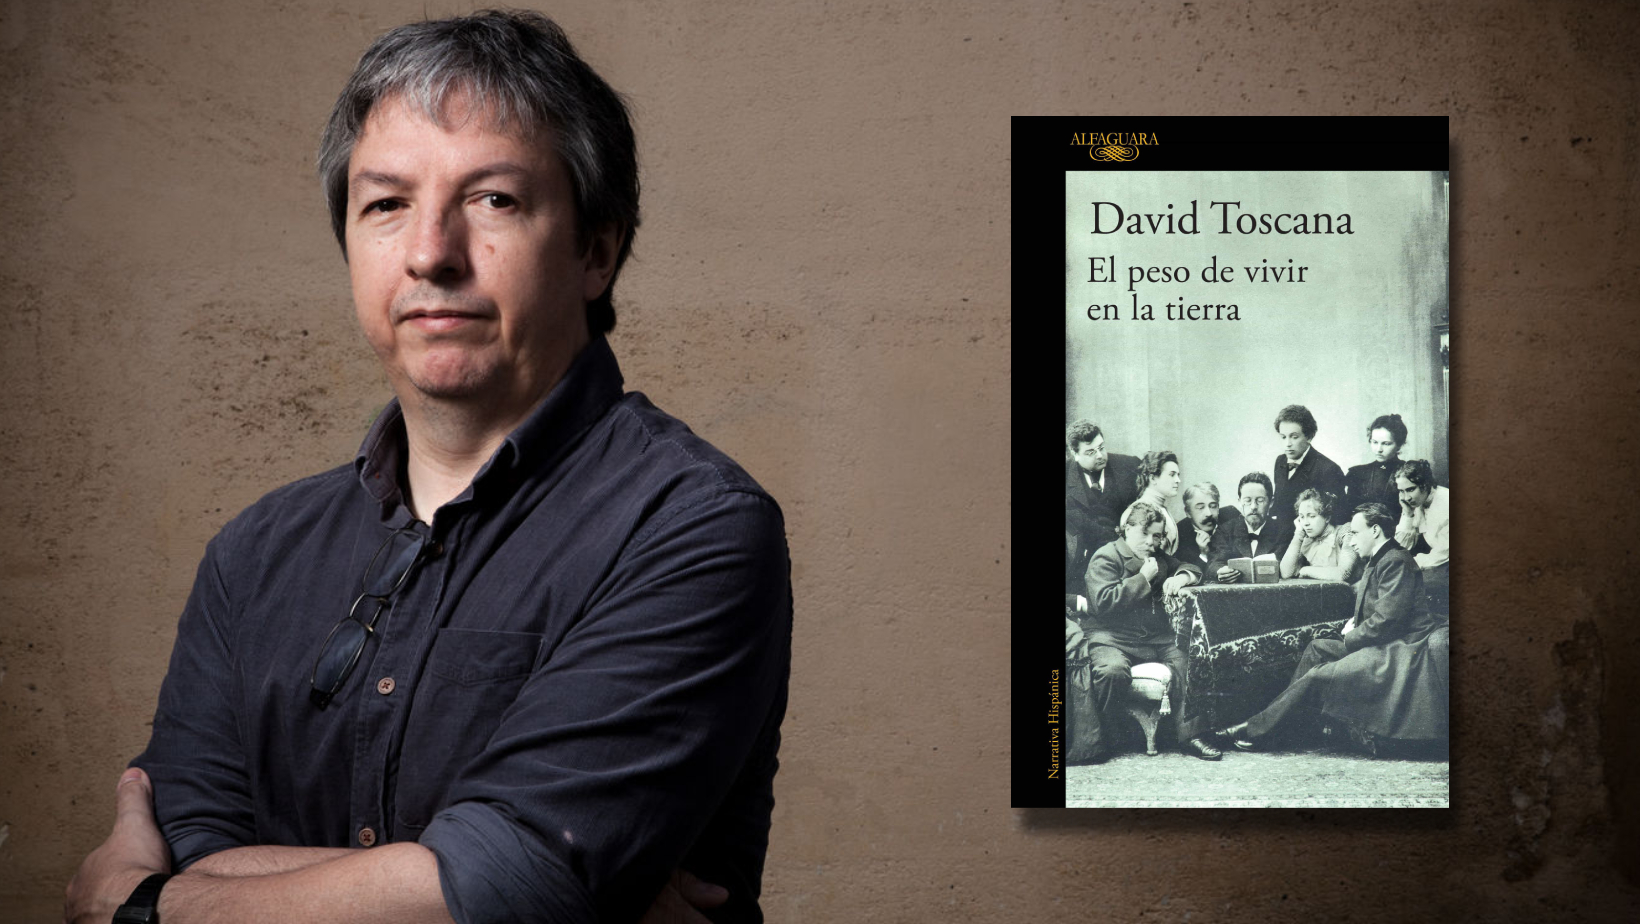 La Bienal Vargas Llosa consagra al mexicano David Toscana y una novela con guiños a Rusia y horror por los asesinatos de Stalin